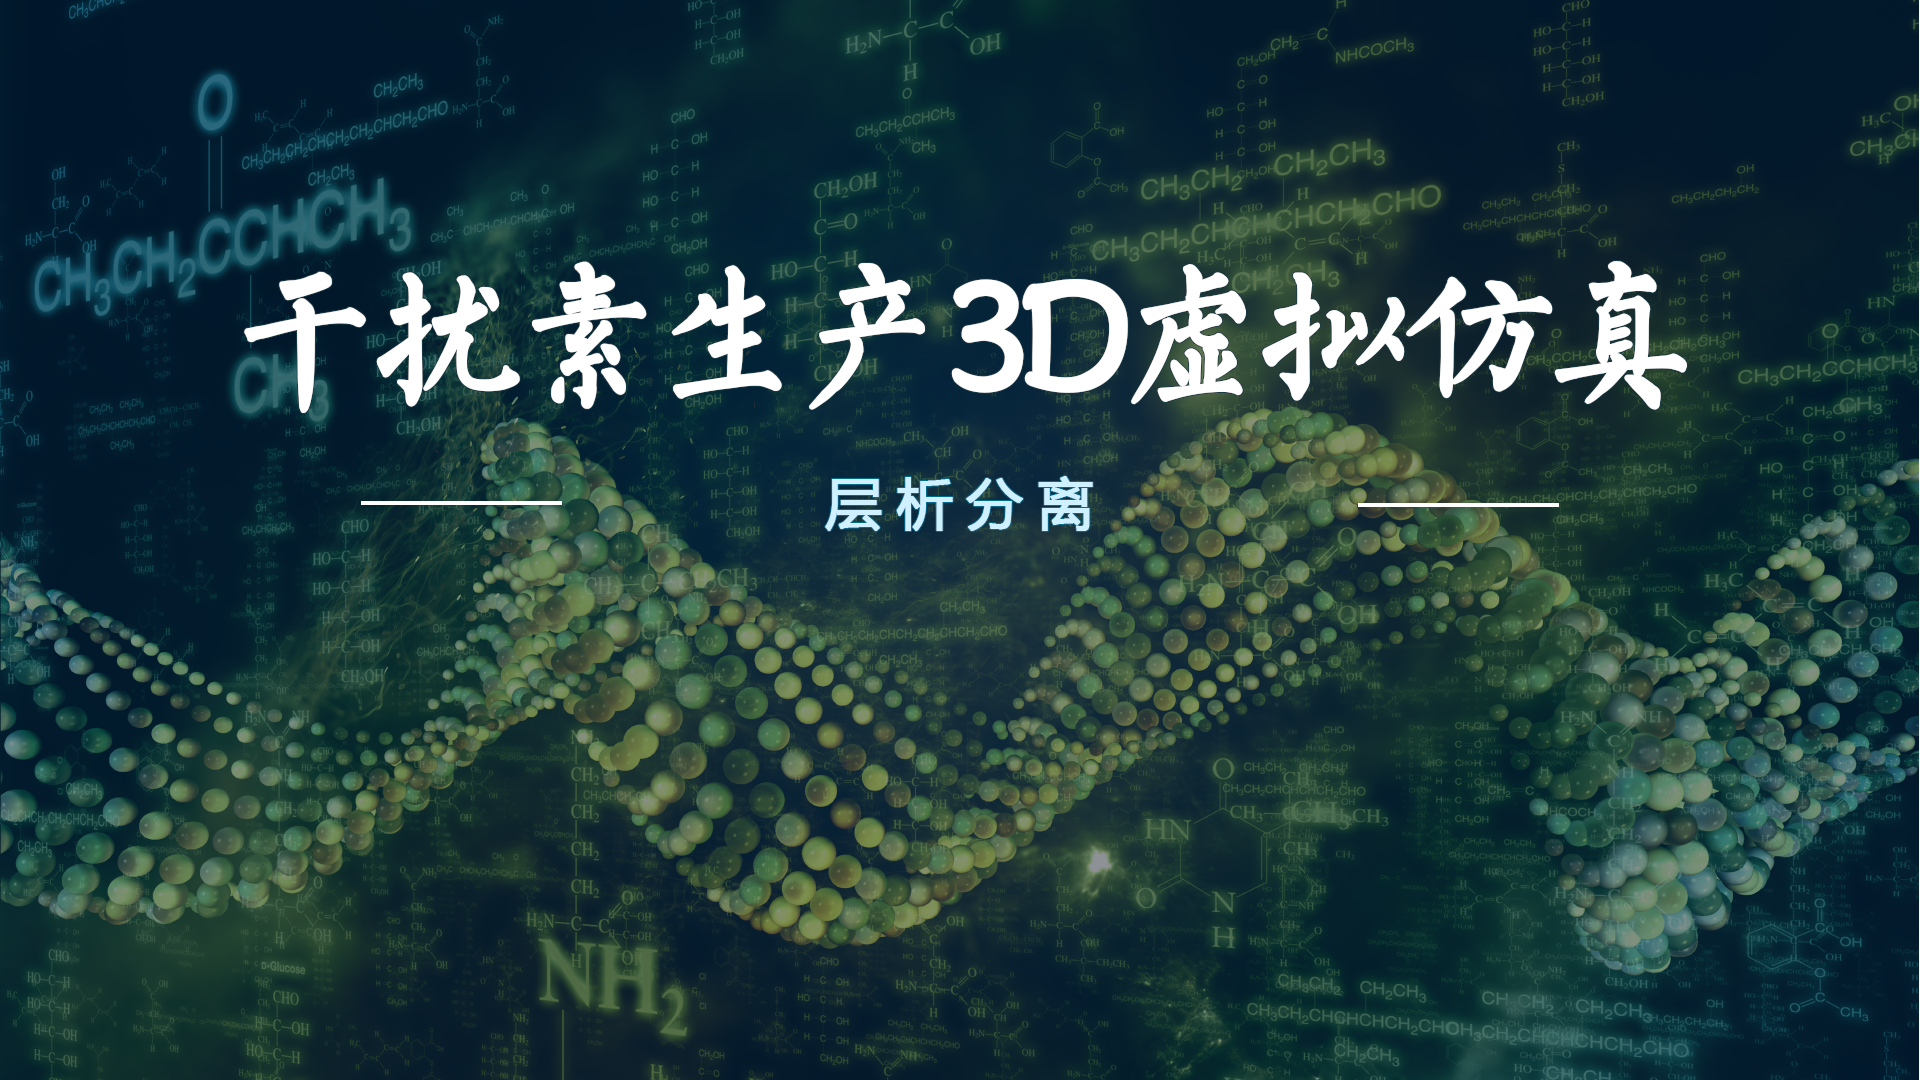 β干扰素生产3D虚拟仿真教学服务系统